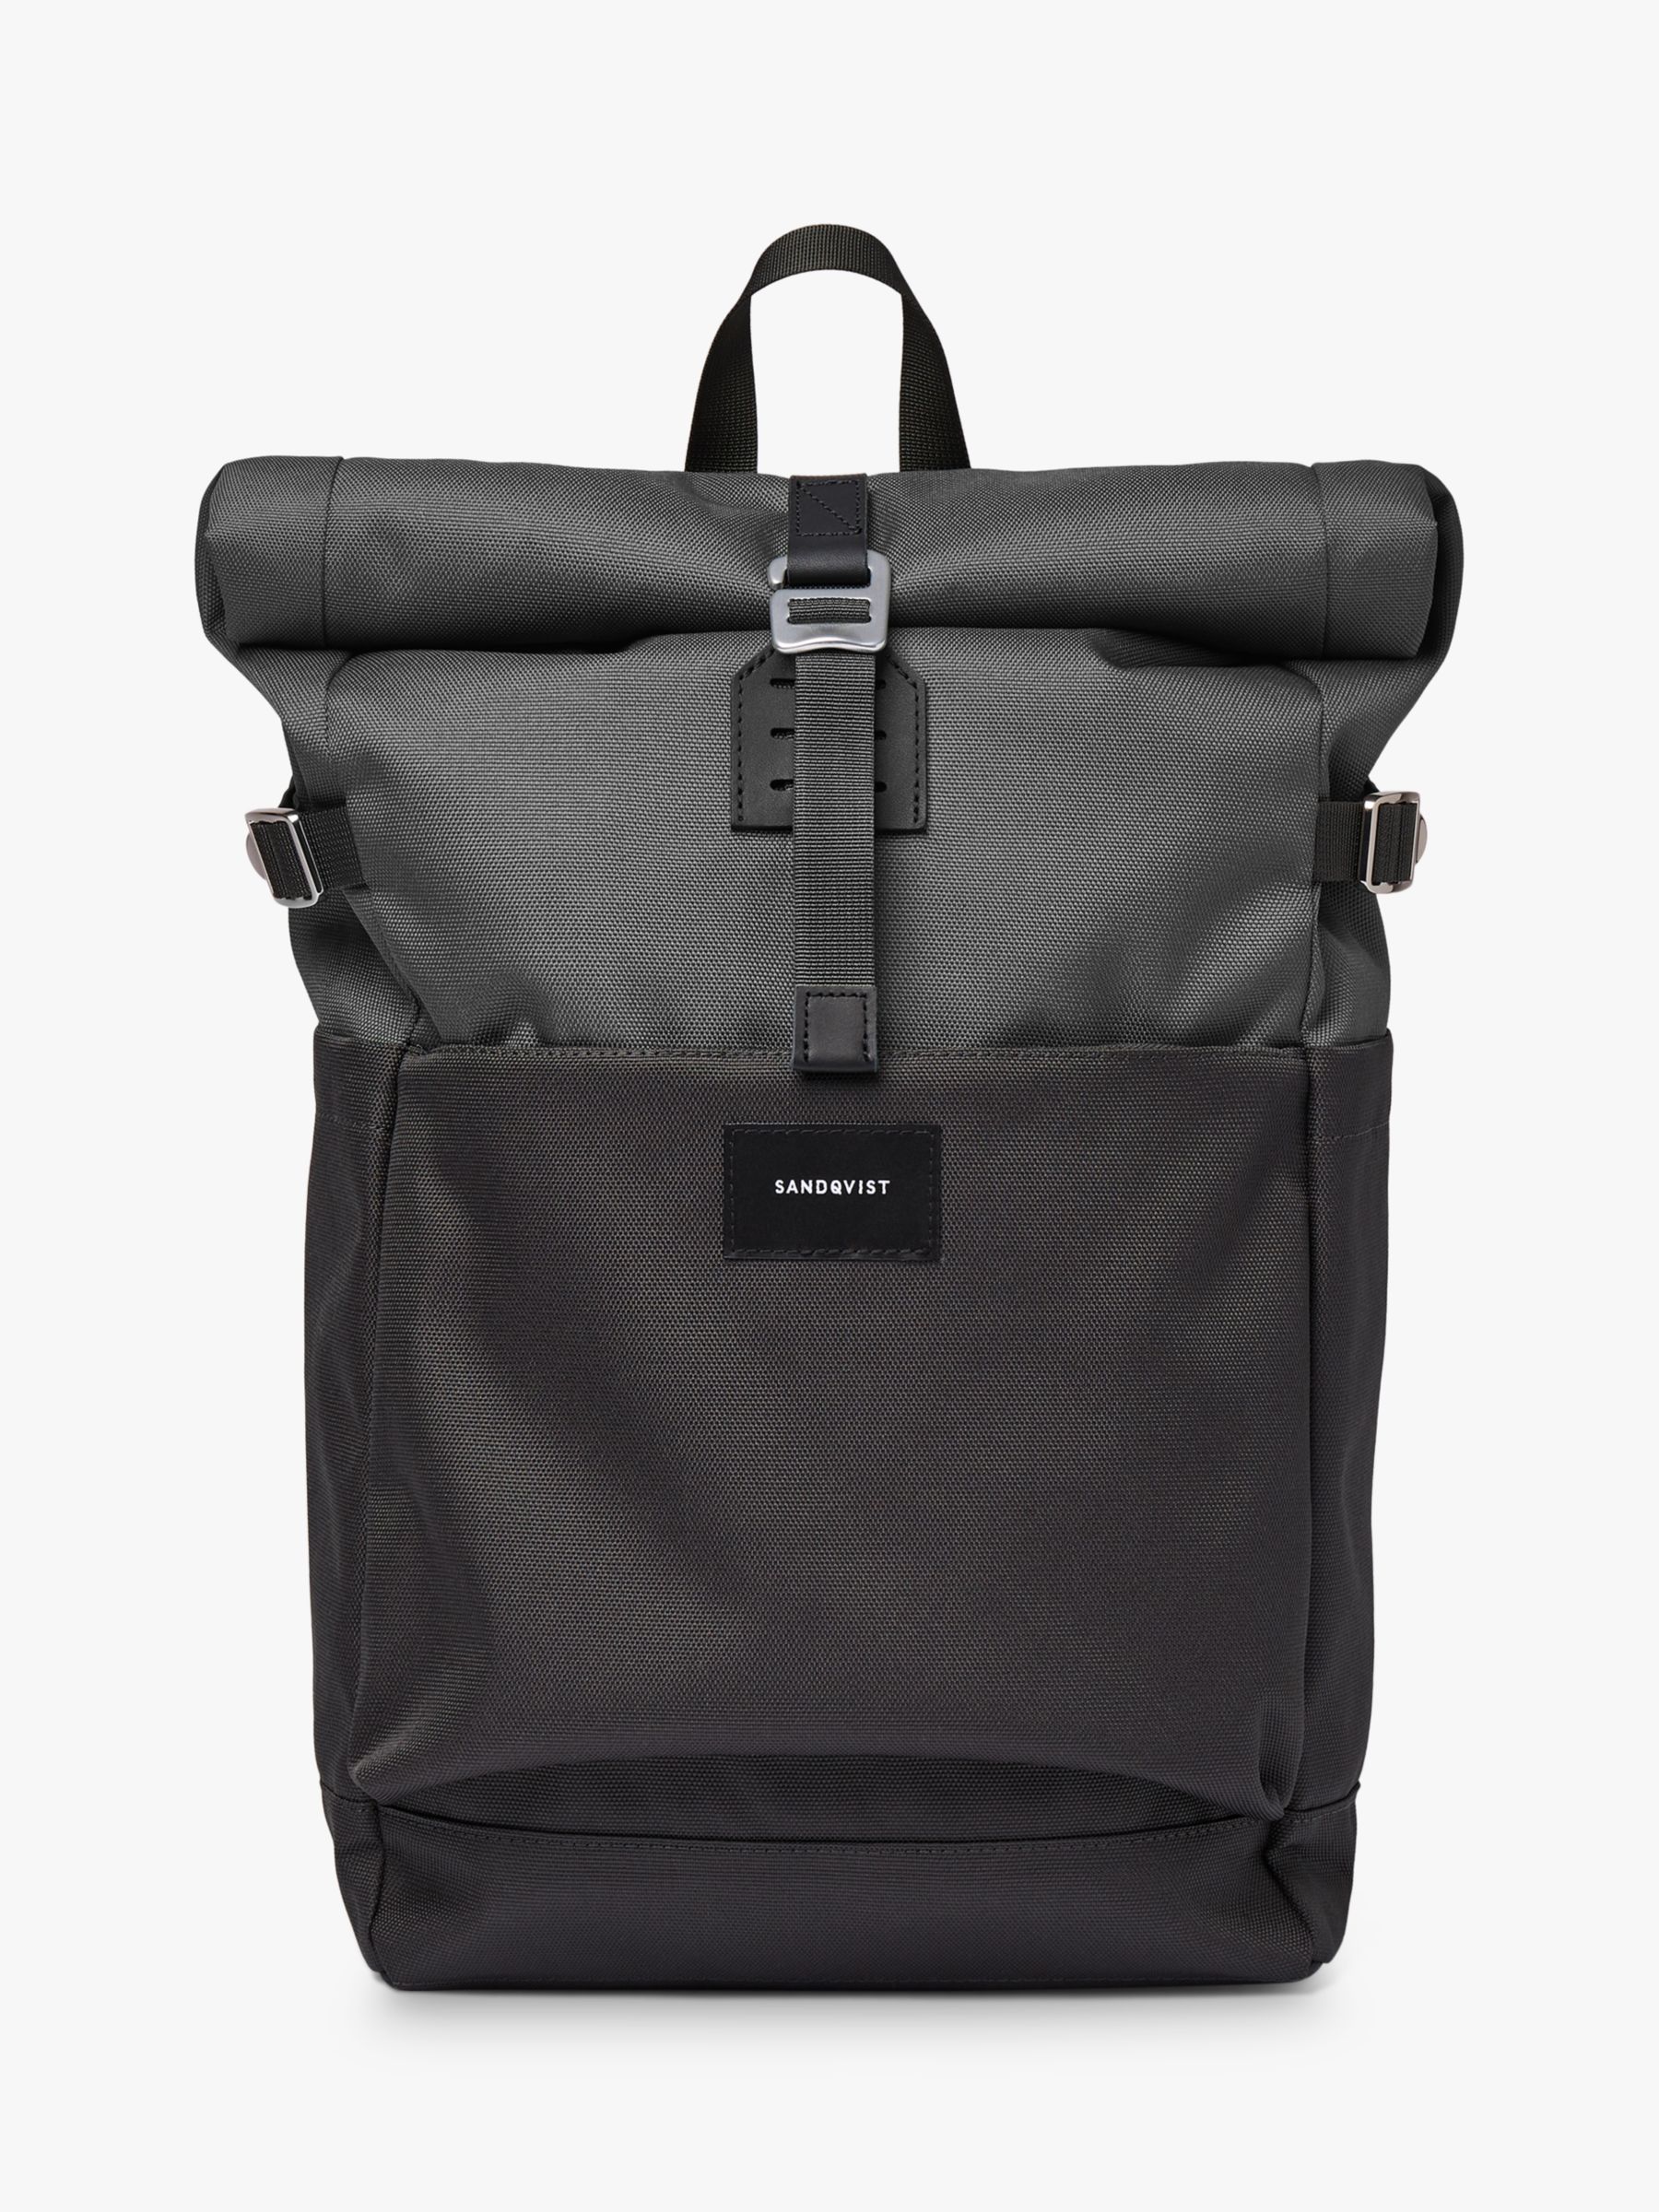 Рюкзак Ilon с откидным верхом Sandqvist, черный рюкзак sandqvist ilon чёрный размер one size